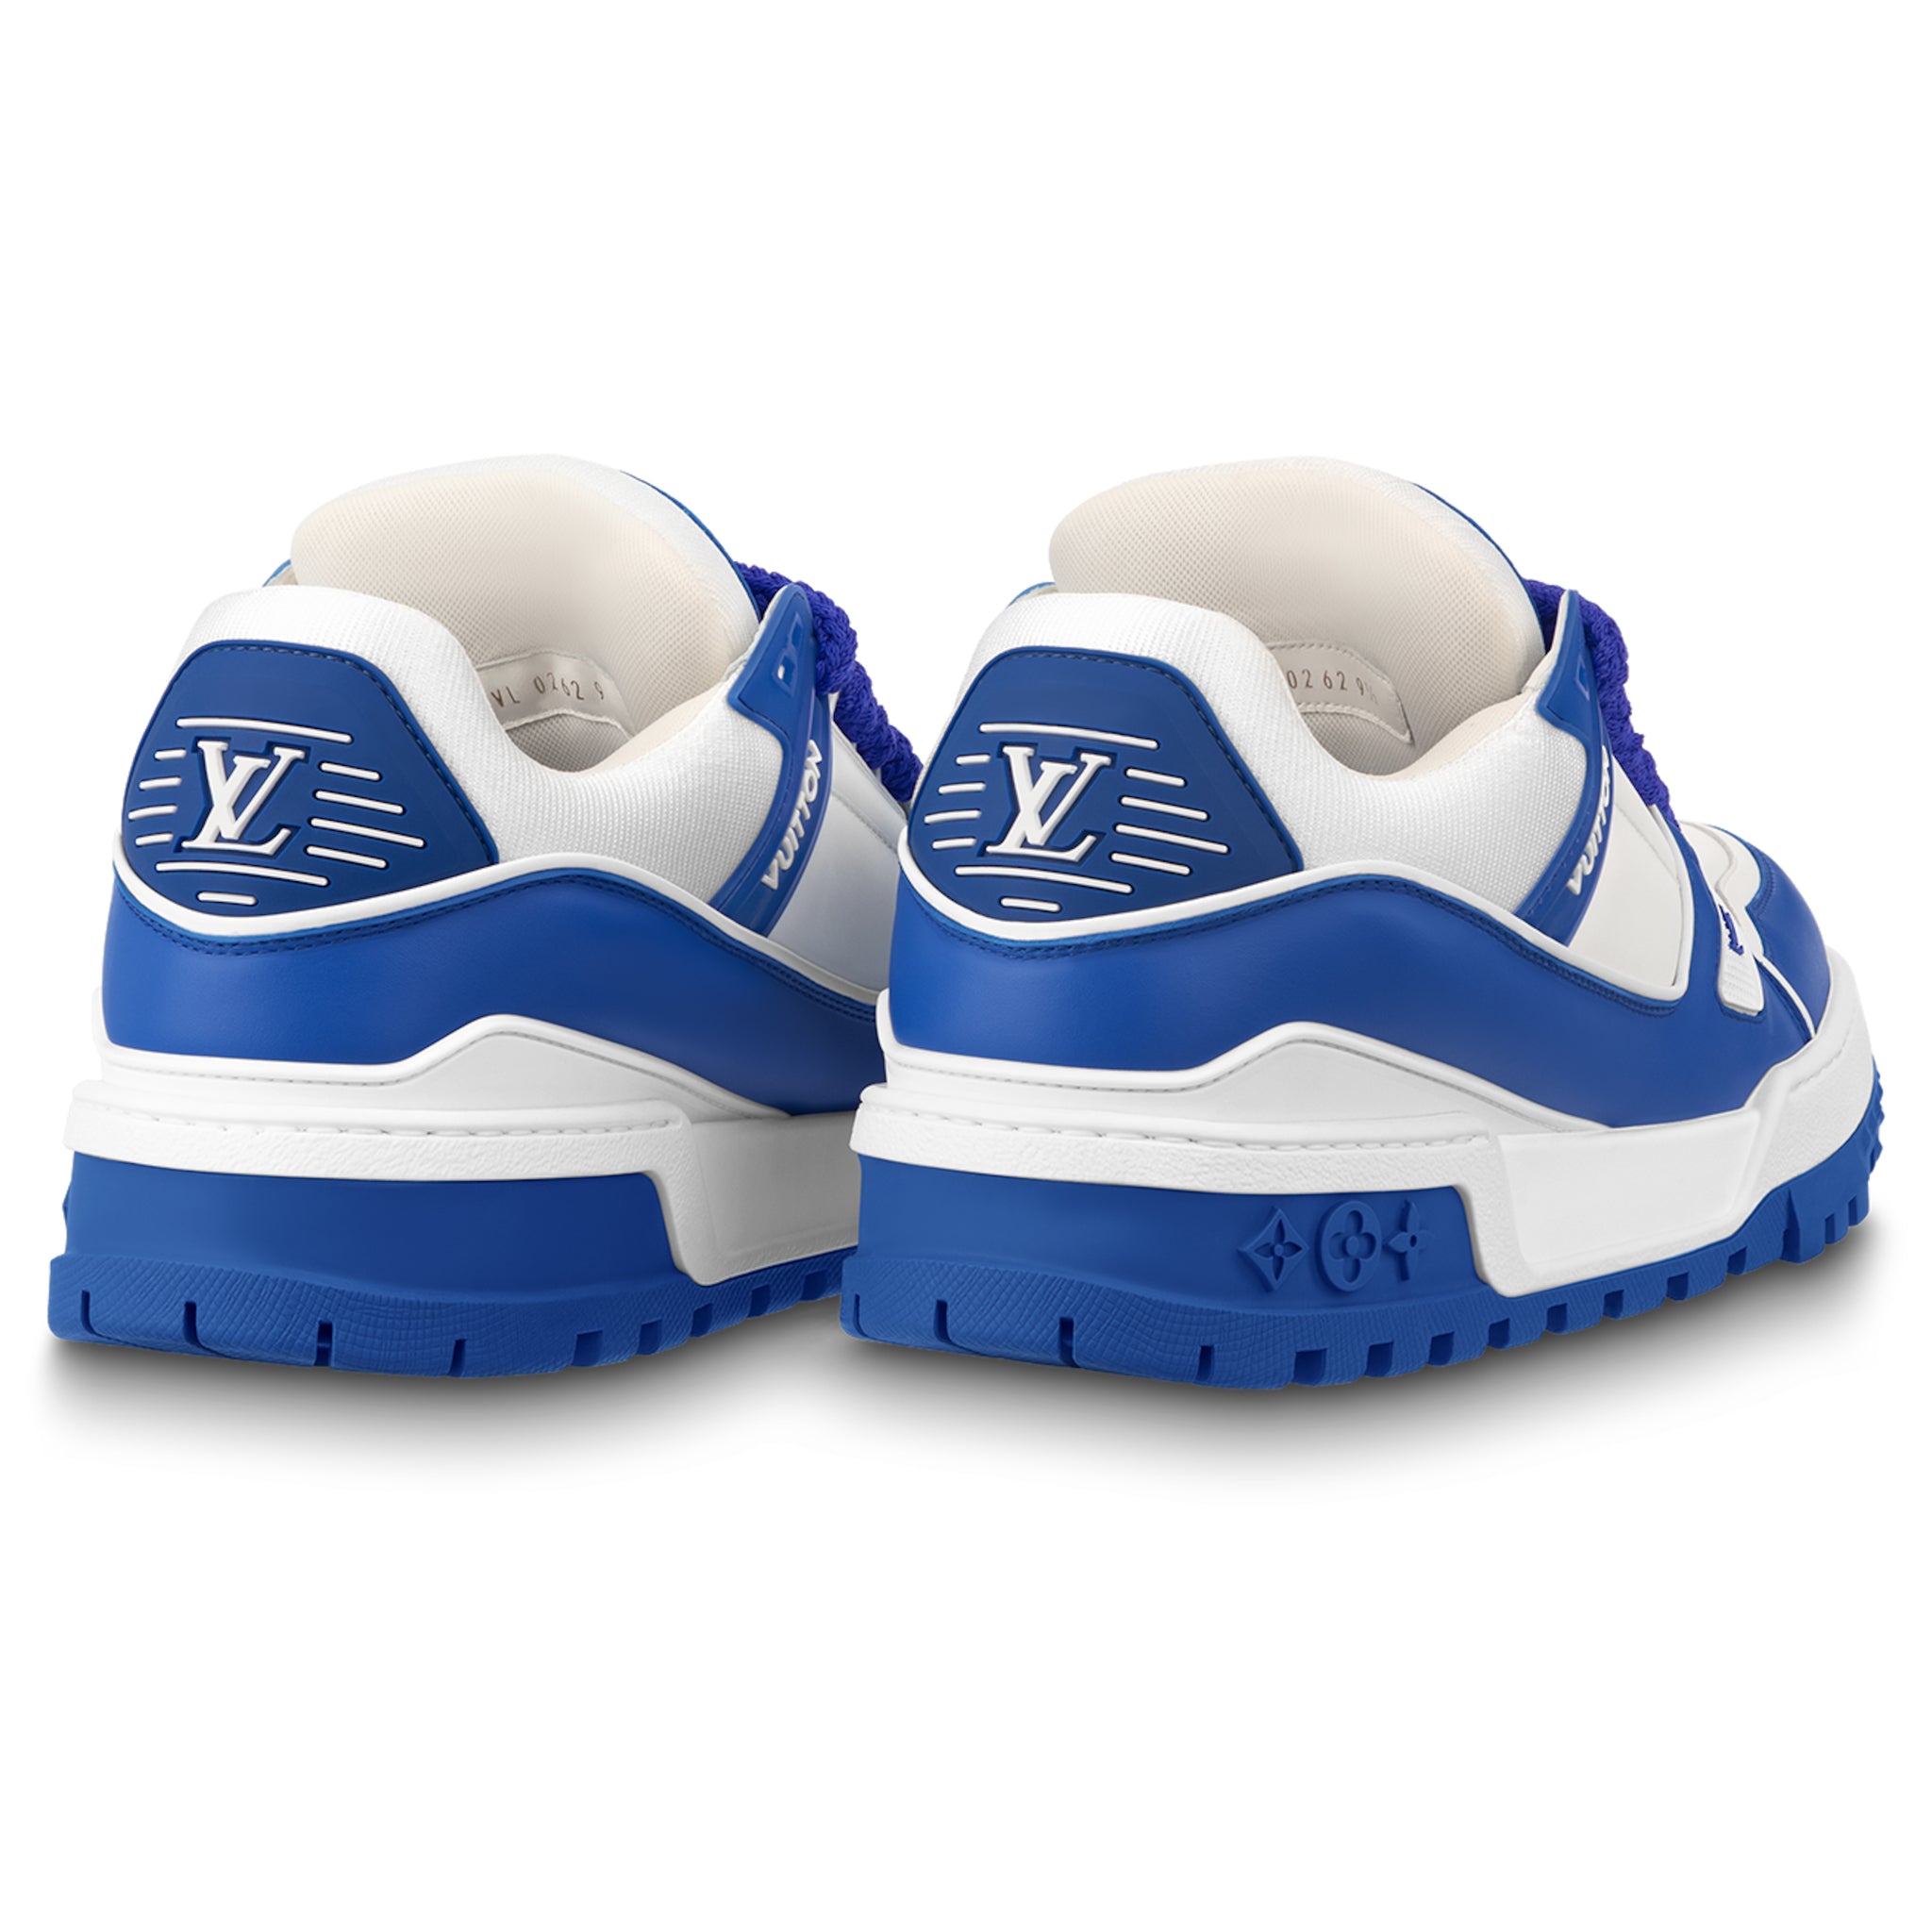 Louis Vuitton LV Maxi Trainer Blue Sneaker - UK 8 / Blue